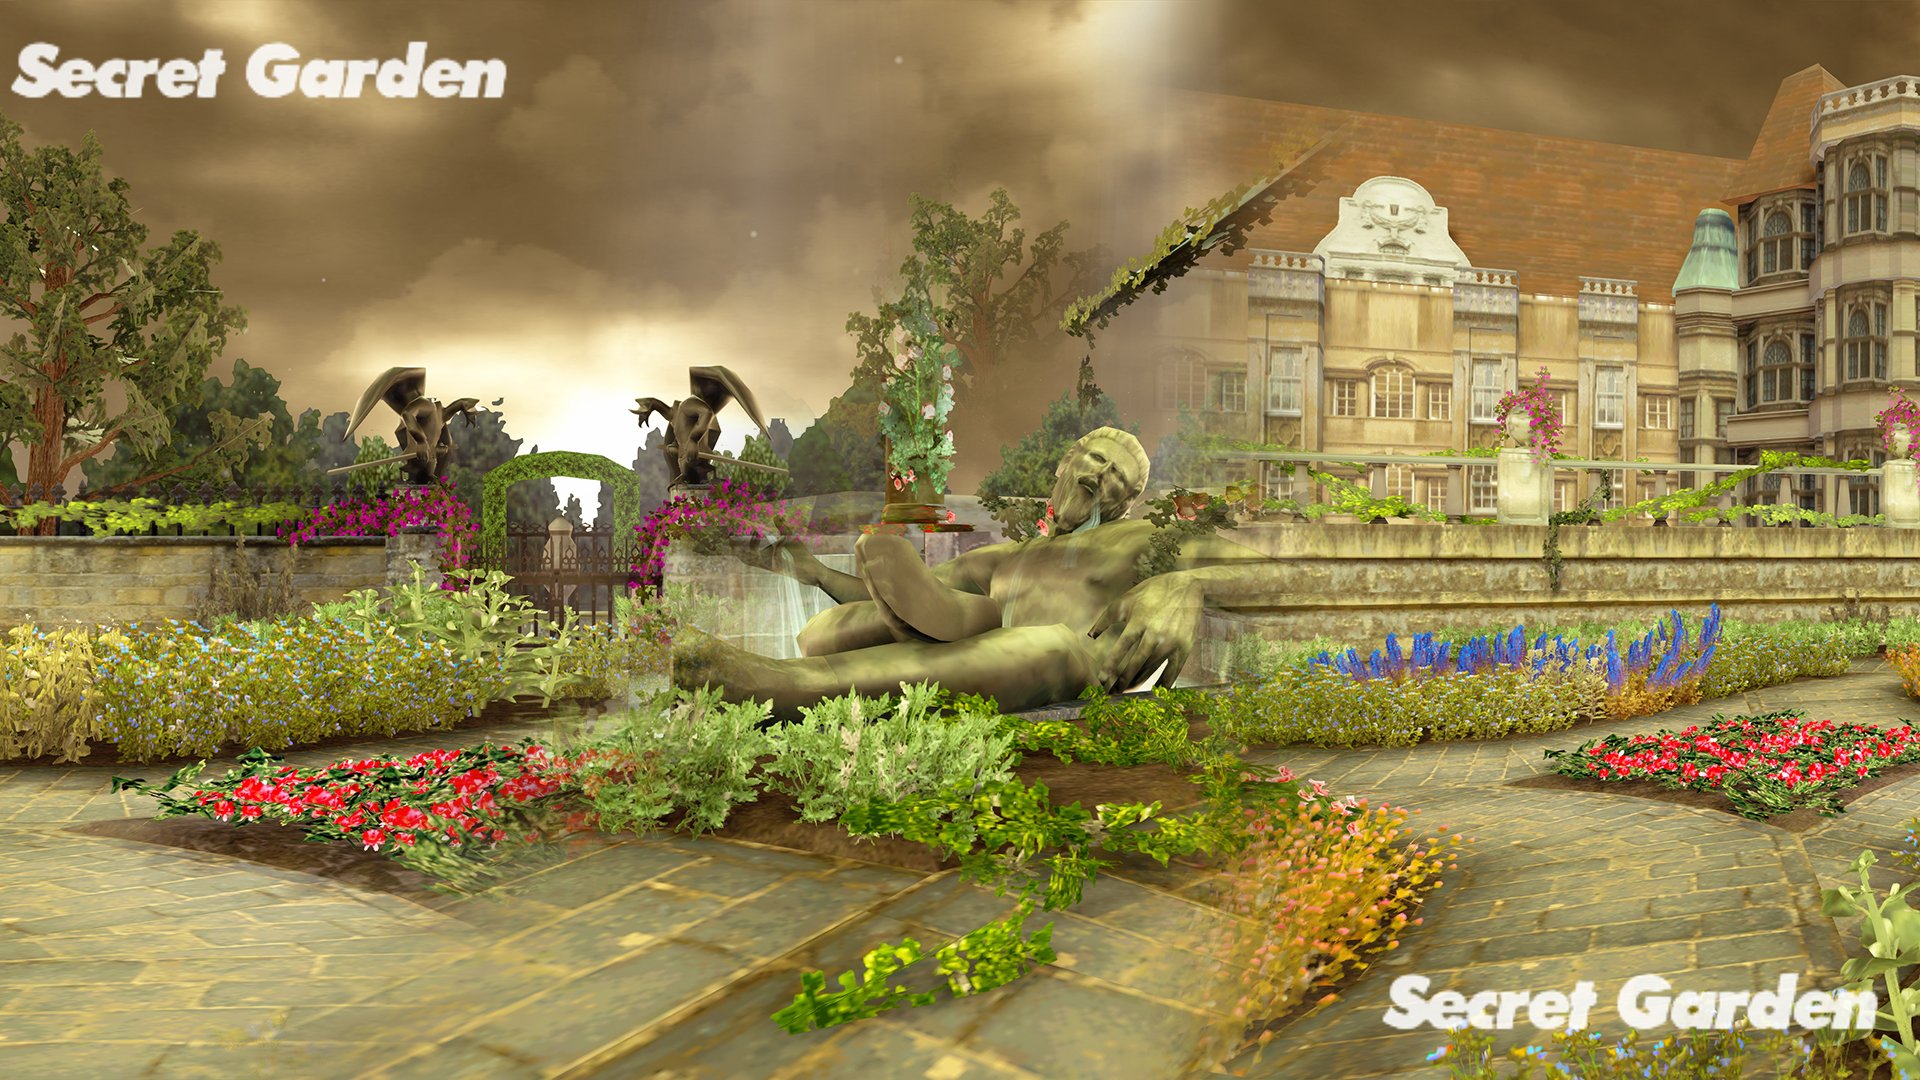 Secret Garden Stage - Tekken 5